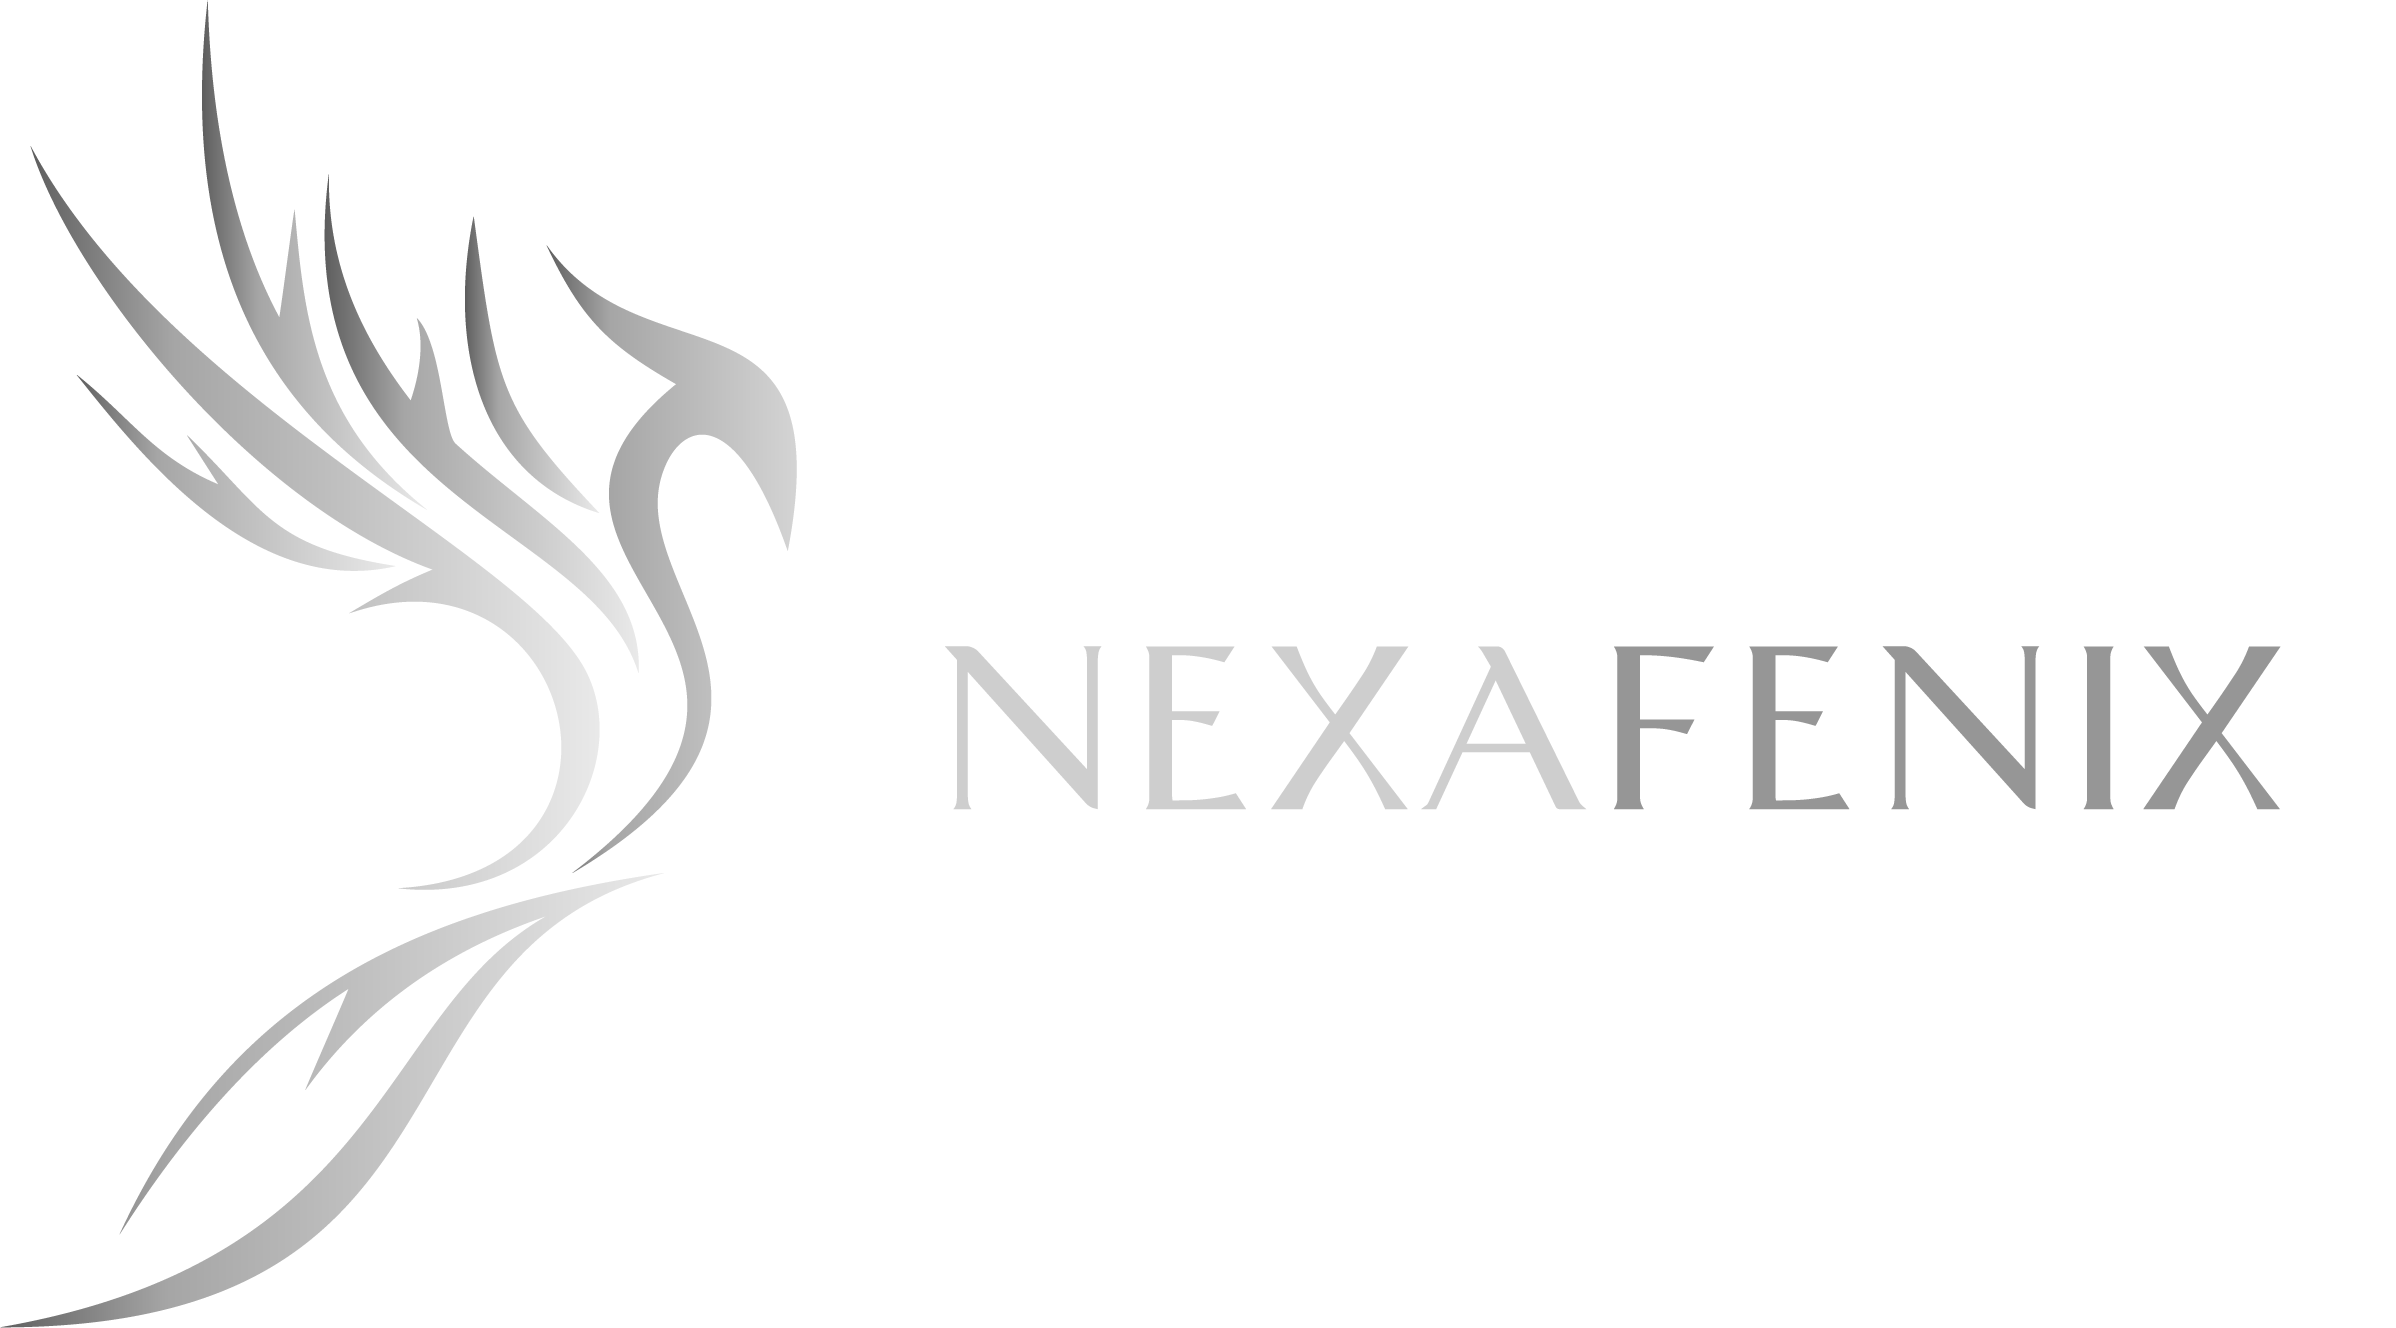 Nexa Fenix